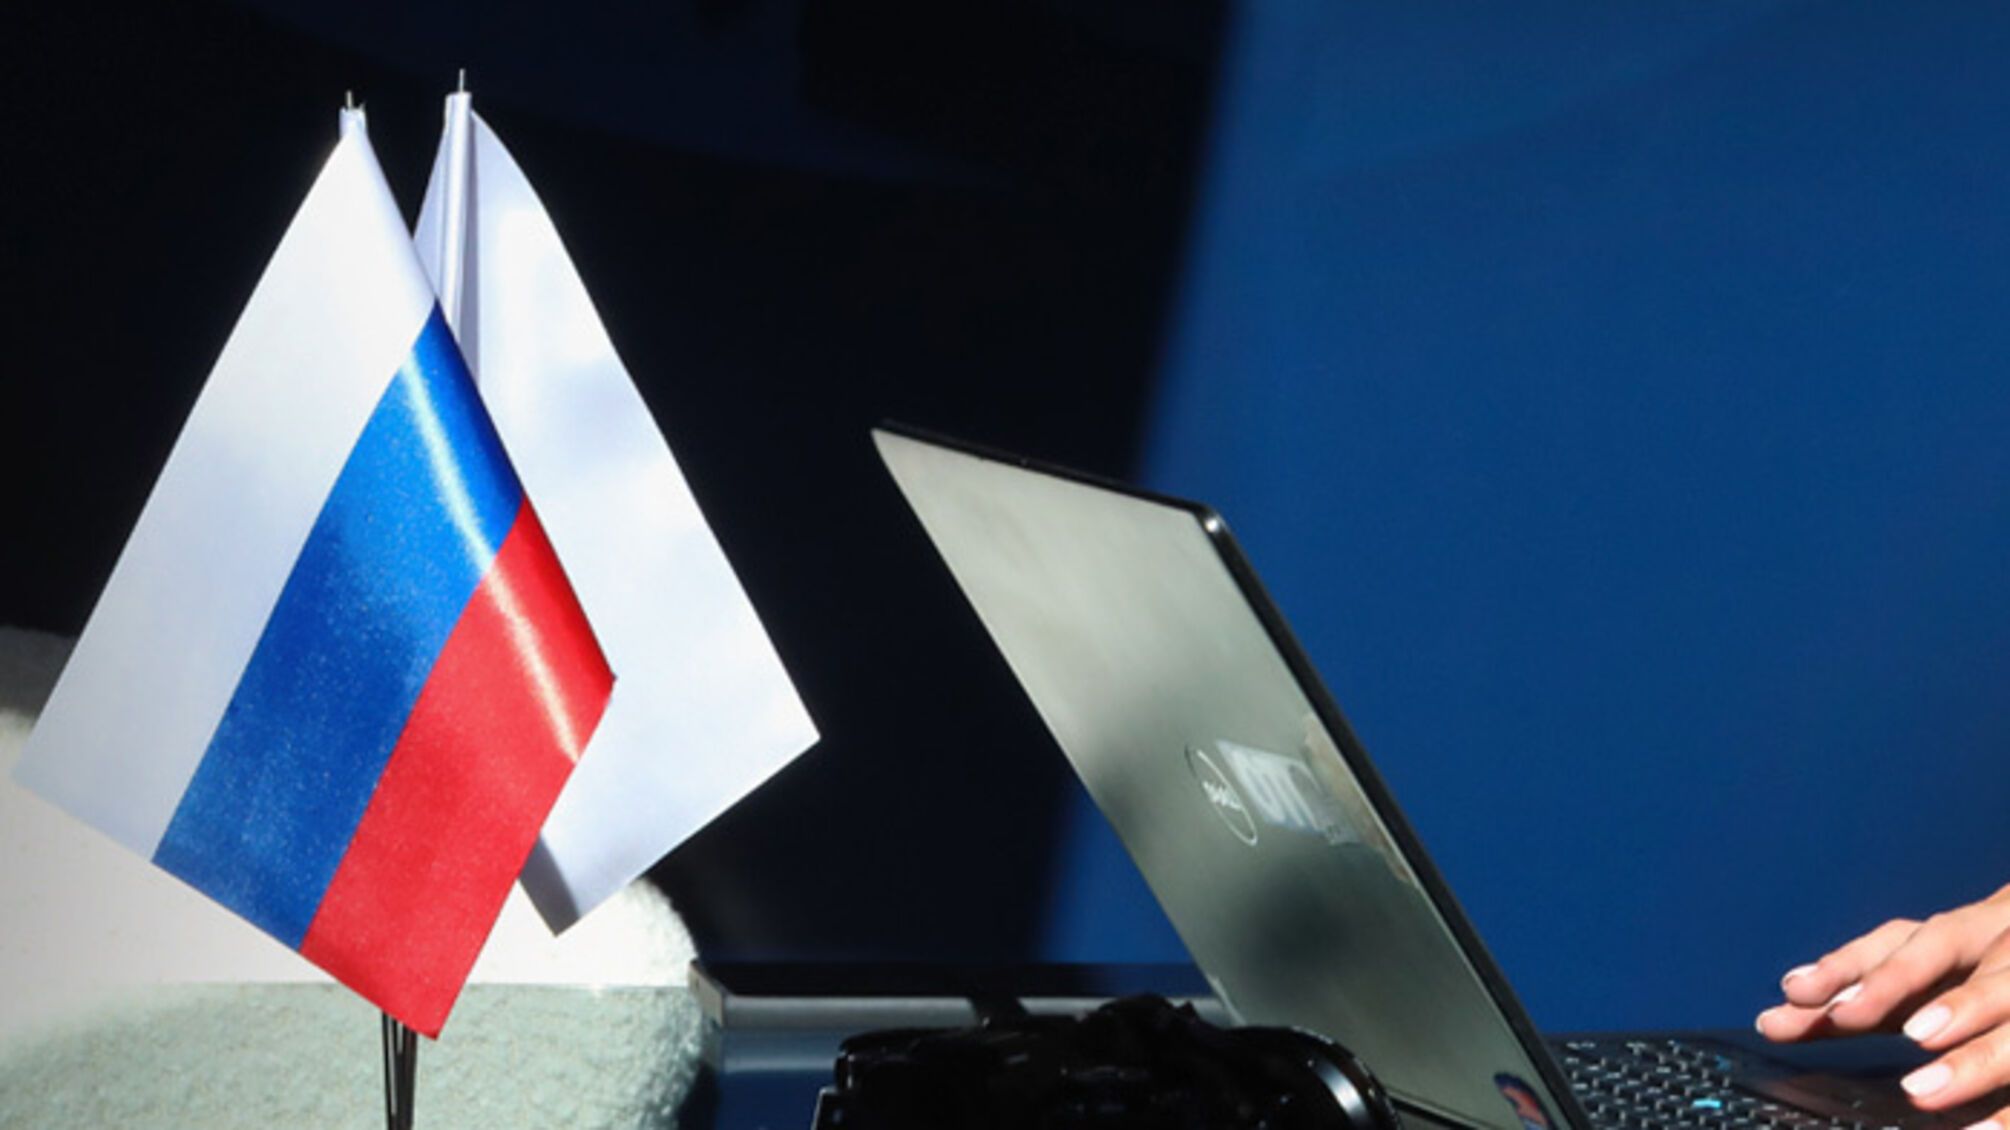 Пророссийские сети влияния в Чехии: как спецслужбы РФ дестабилизируют ситуацию в Европе - подробности